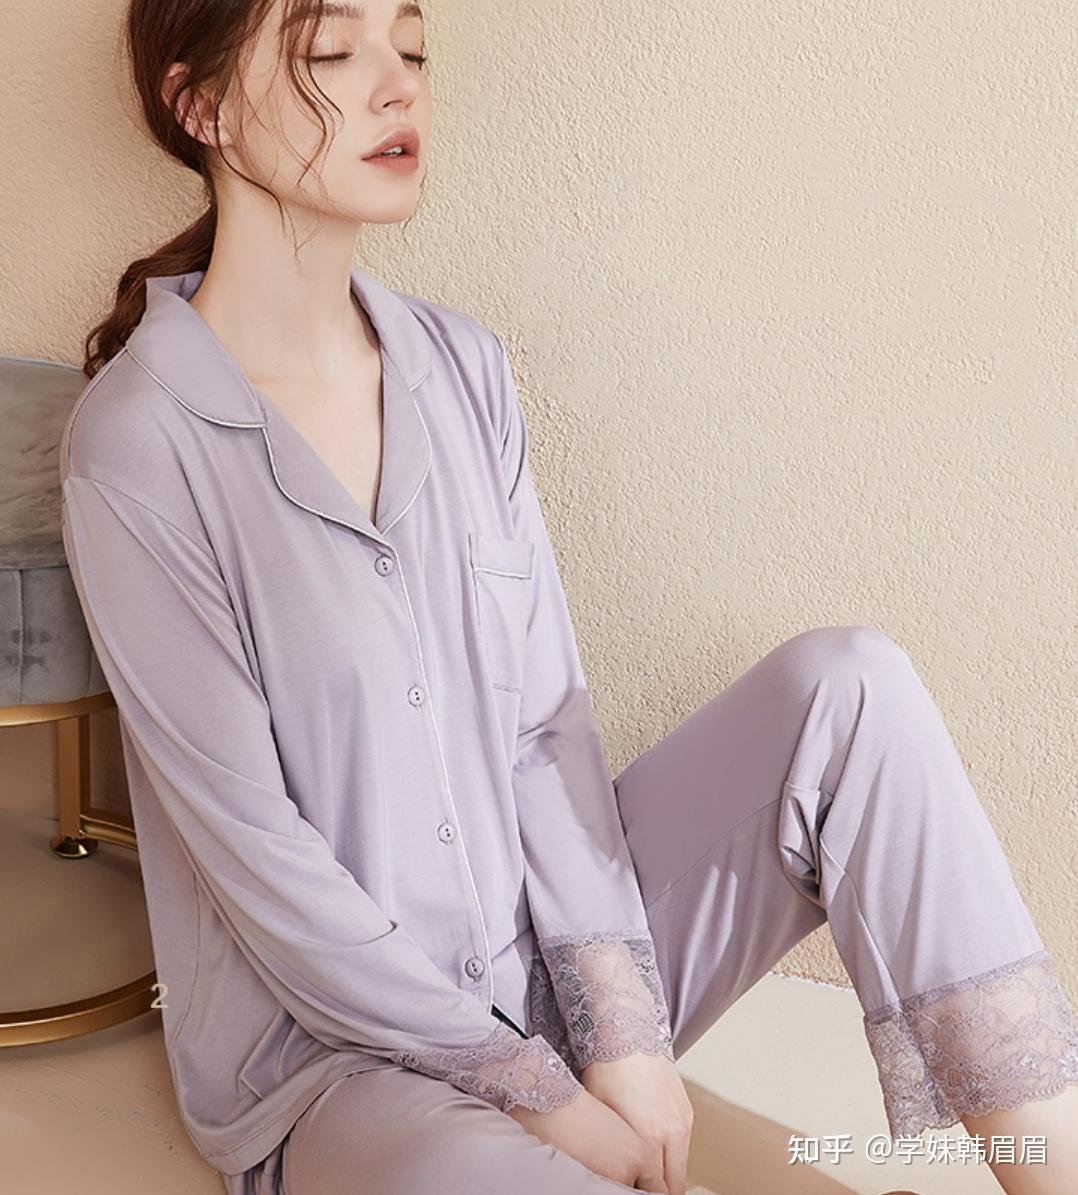 中国睡衣十大品牌 舒适好穿的睡衣品牌推荐 - 神奇评测